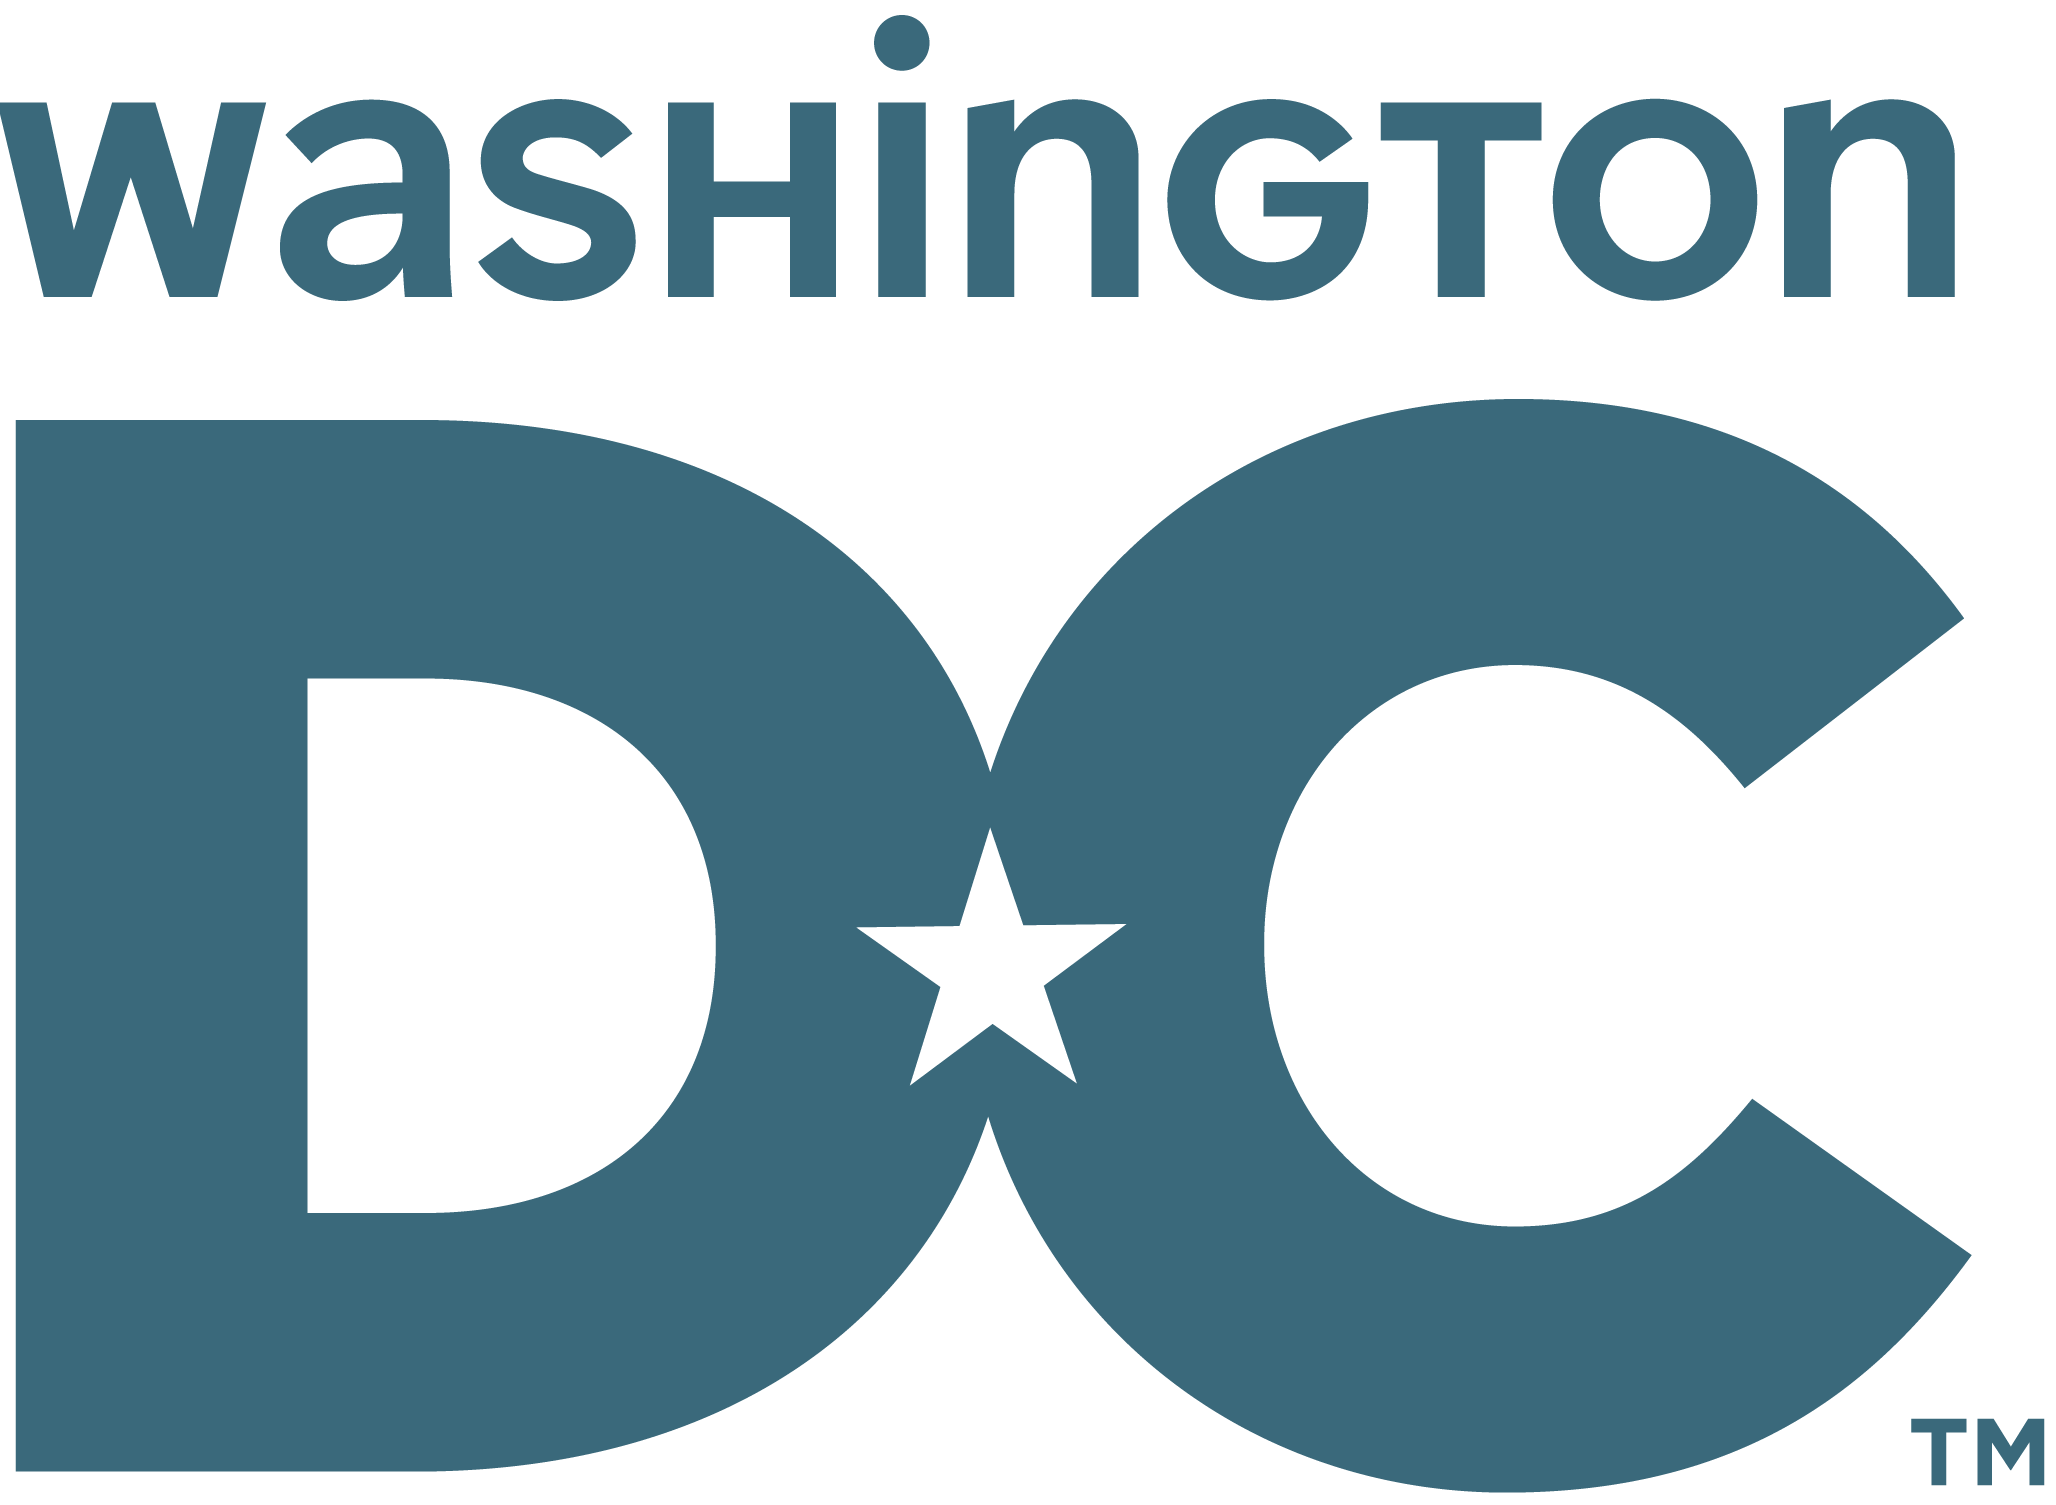 university washington dc logo